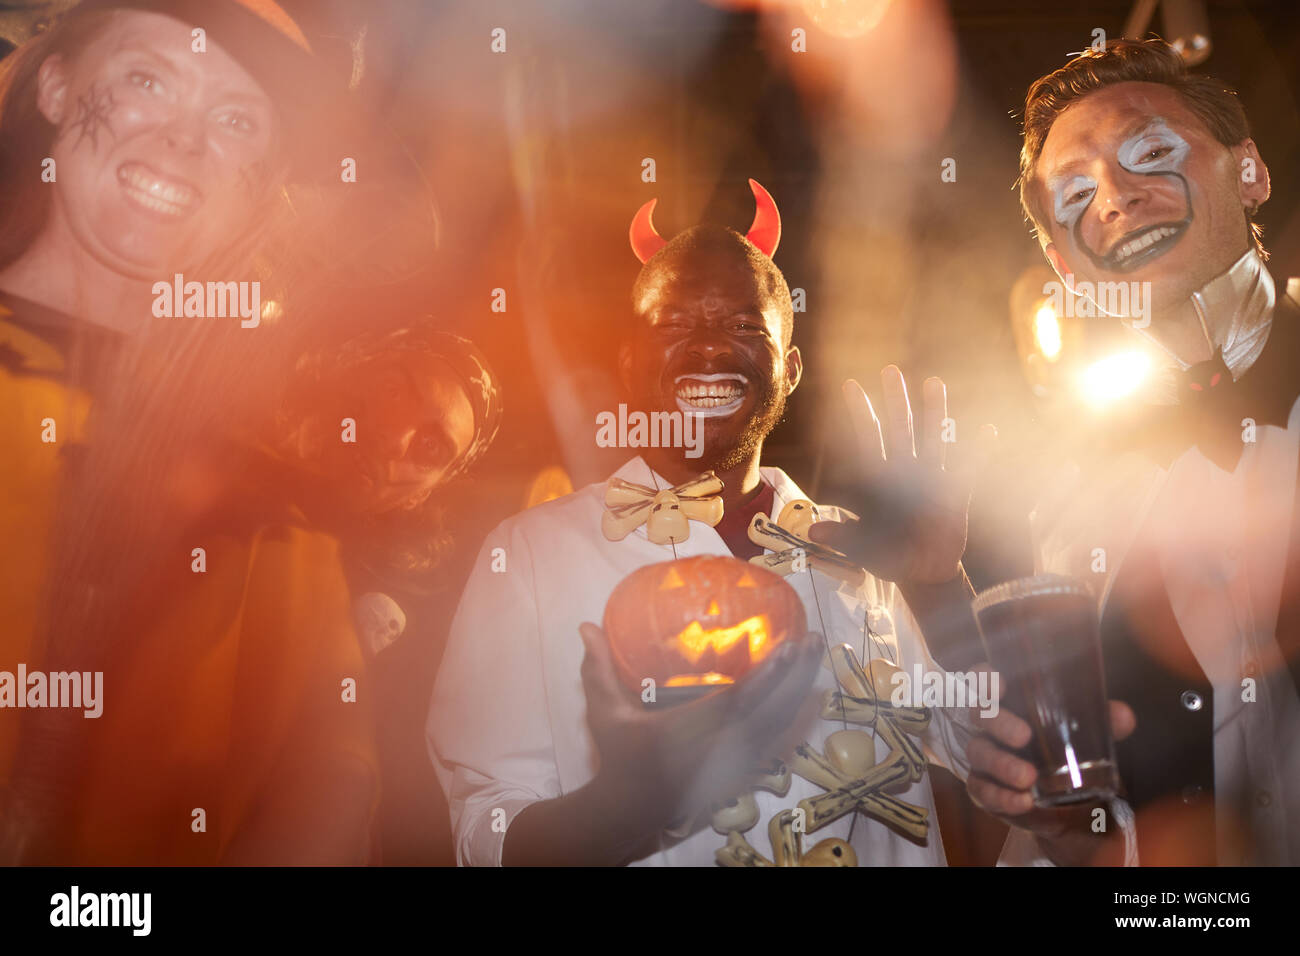 Low angle view au groupe des adultes hommes portant des costumes de Halloween posant au cours de partie en club, se concentrer sur l'homme afro-américain holding pumpkin dans le centre Banque D'Images